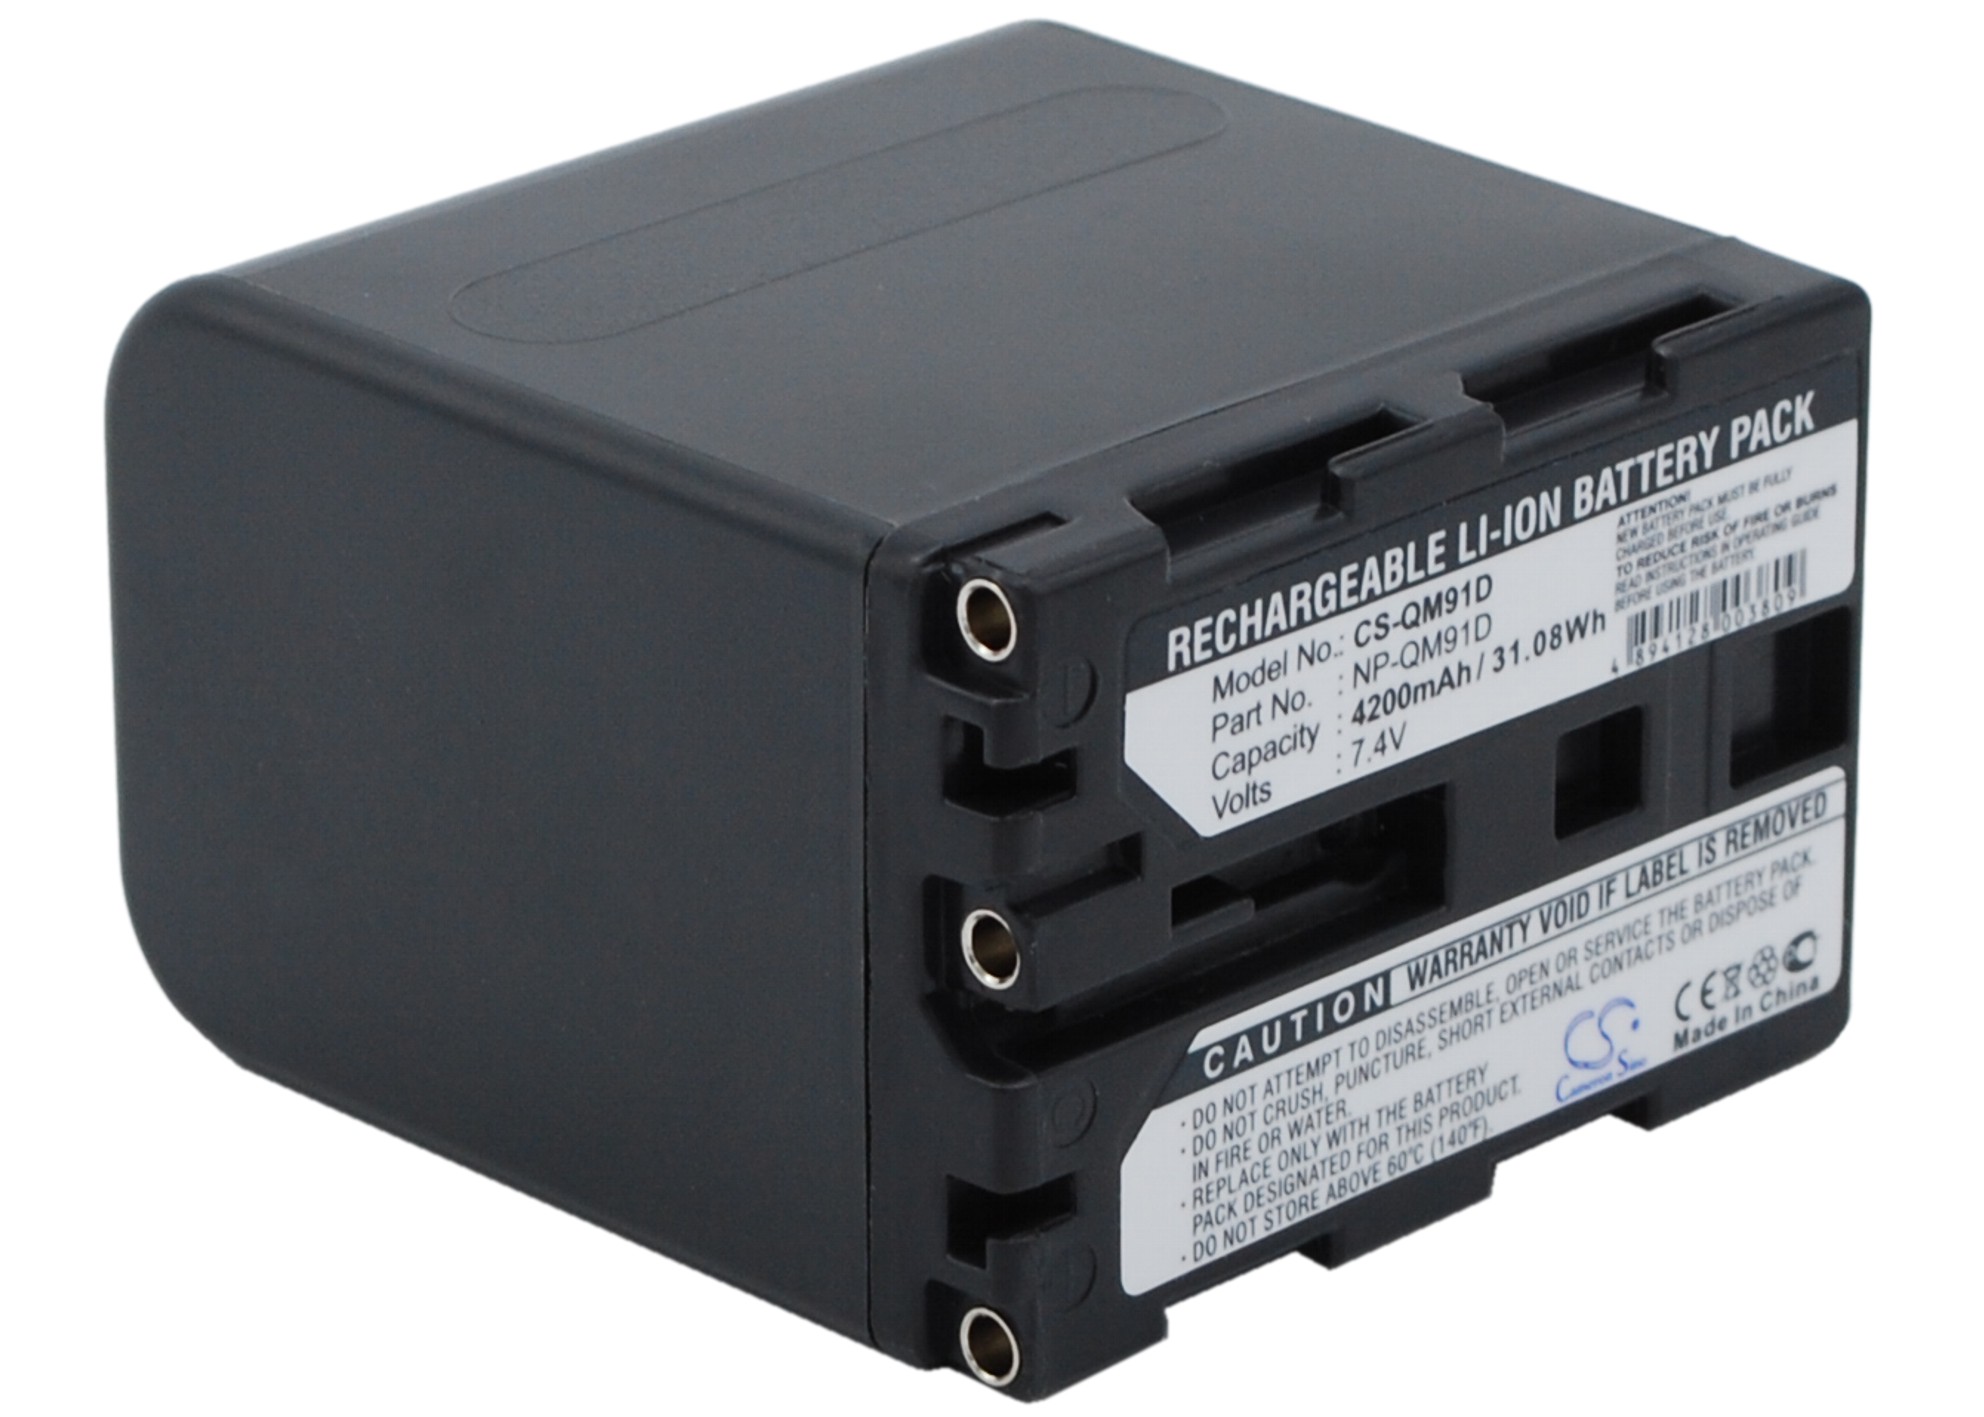 Cameron Sino Battery for Sony CCD-TRV428 DCR-TRV15 DCR-TRV16 GV-D1000 DCR-PC8 NP-QM91D 4200mA